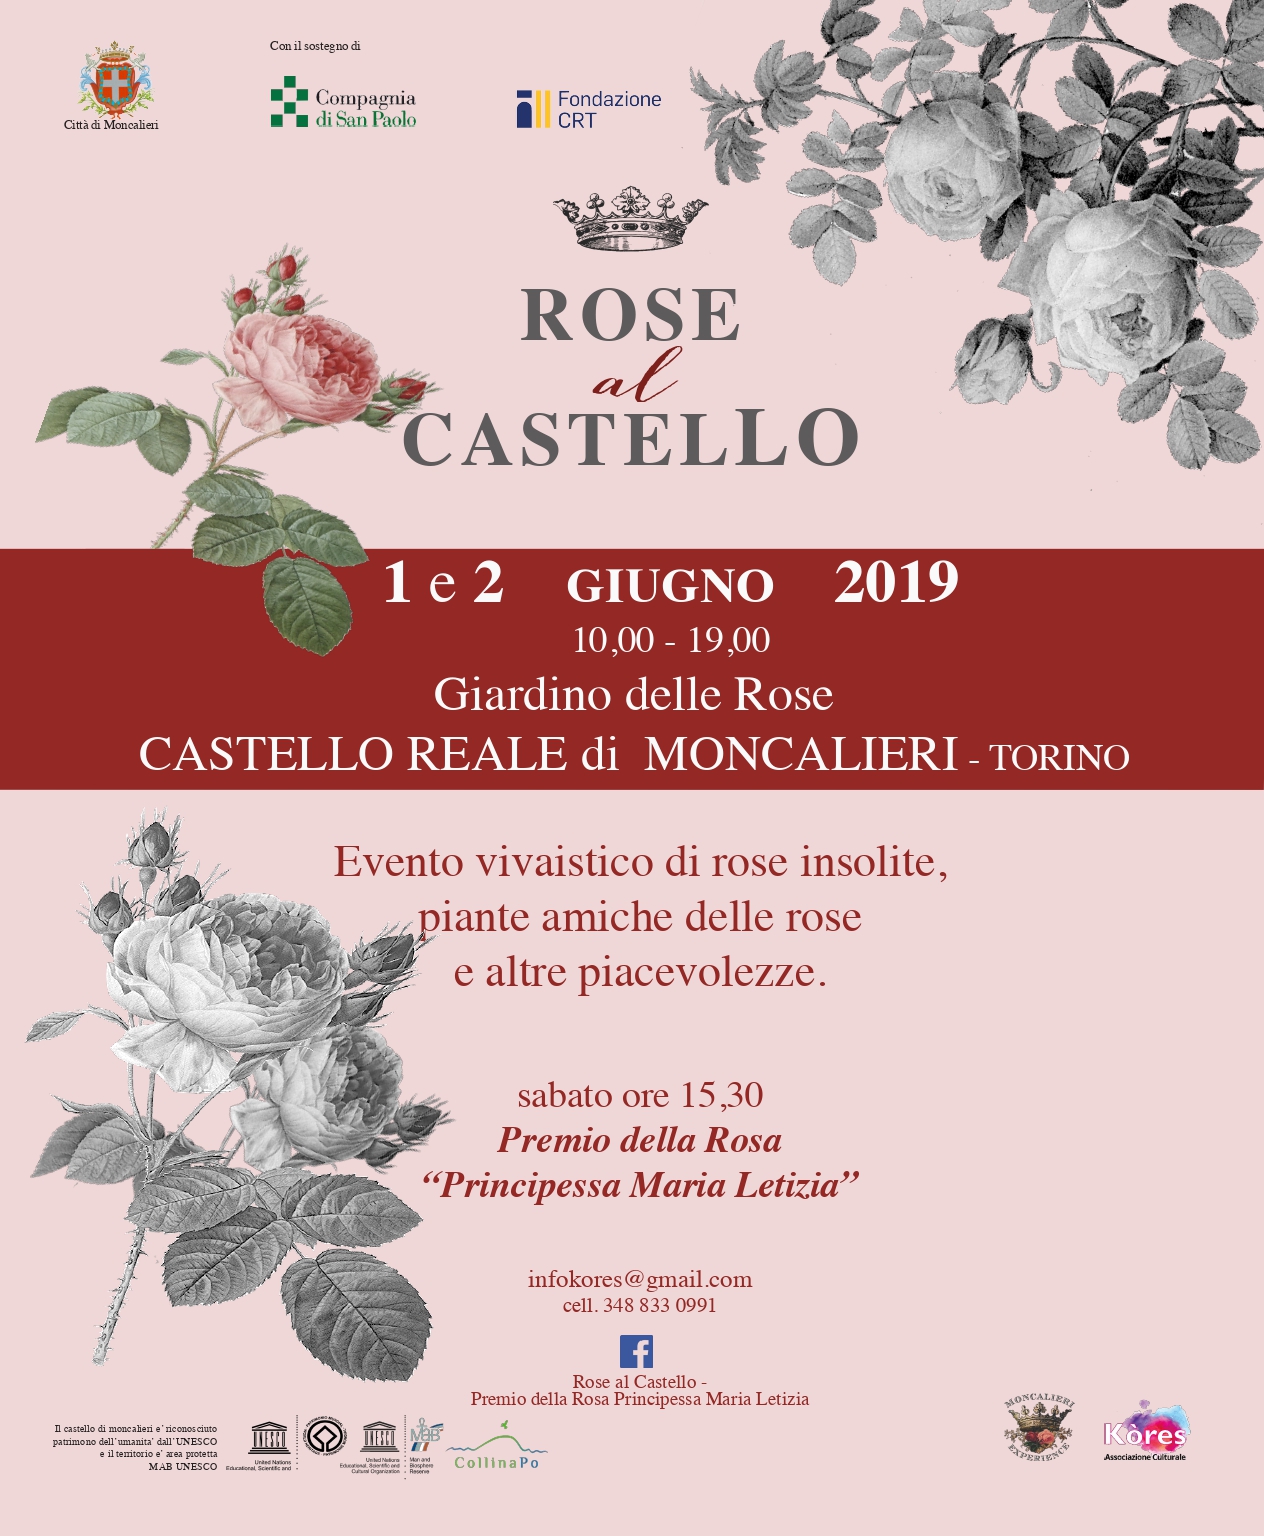 Depliant informativo della Manifestazione Rose al castello 2019 - Premio della rosa Principessa Maria Letizia al Real castello di Moncalieri, Sabato 1 e domenica 2 giugno 2019.